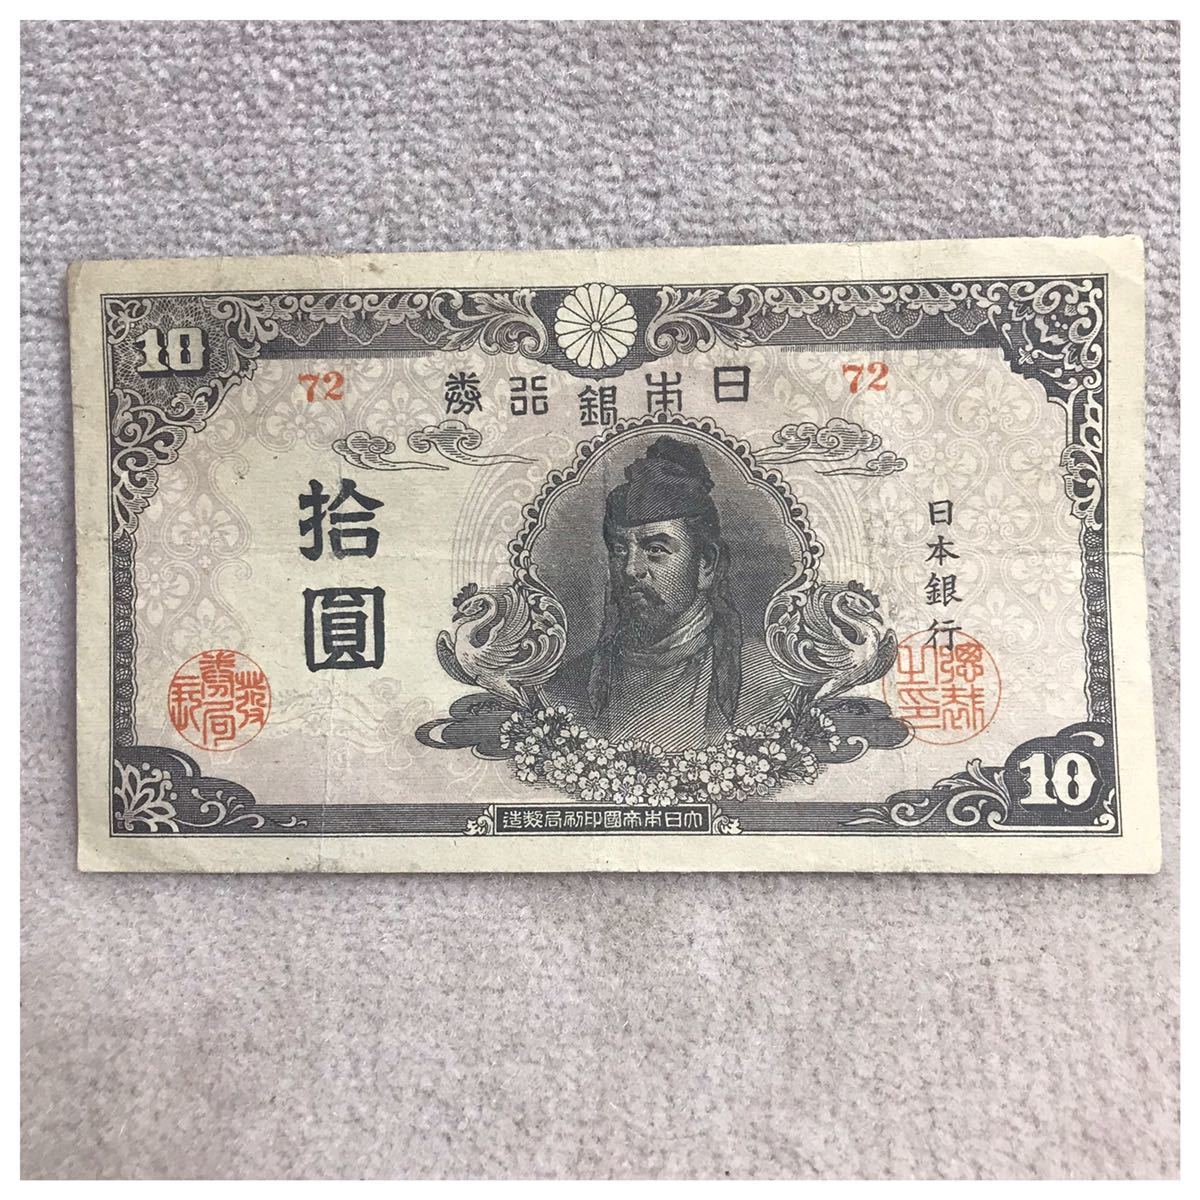 再改正不換紙幣10円 (4次10円) 中央に和気清麿 記号72 後期 美品《#167YKSHF》